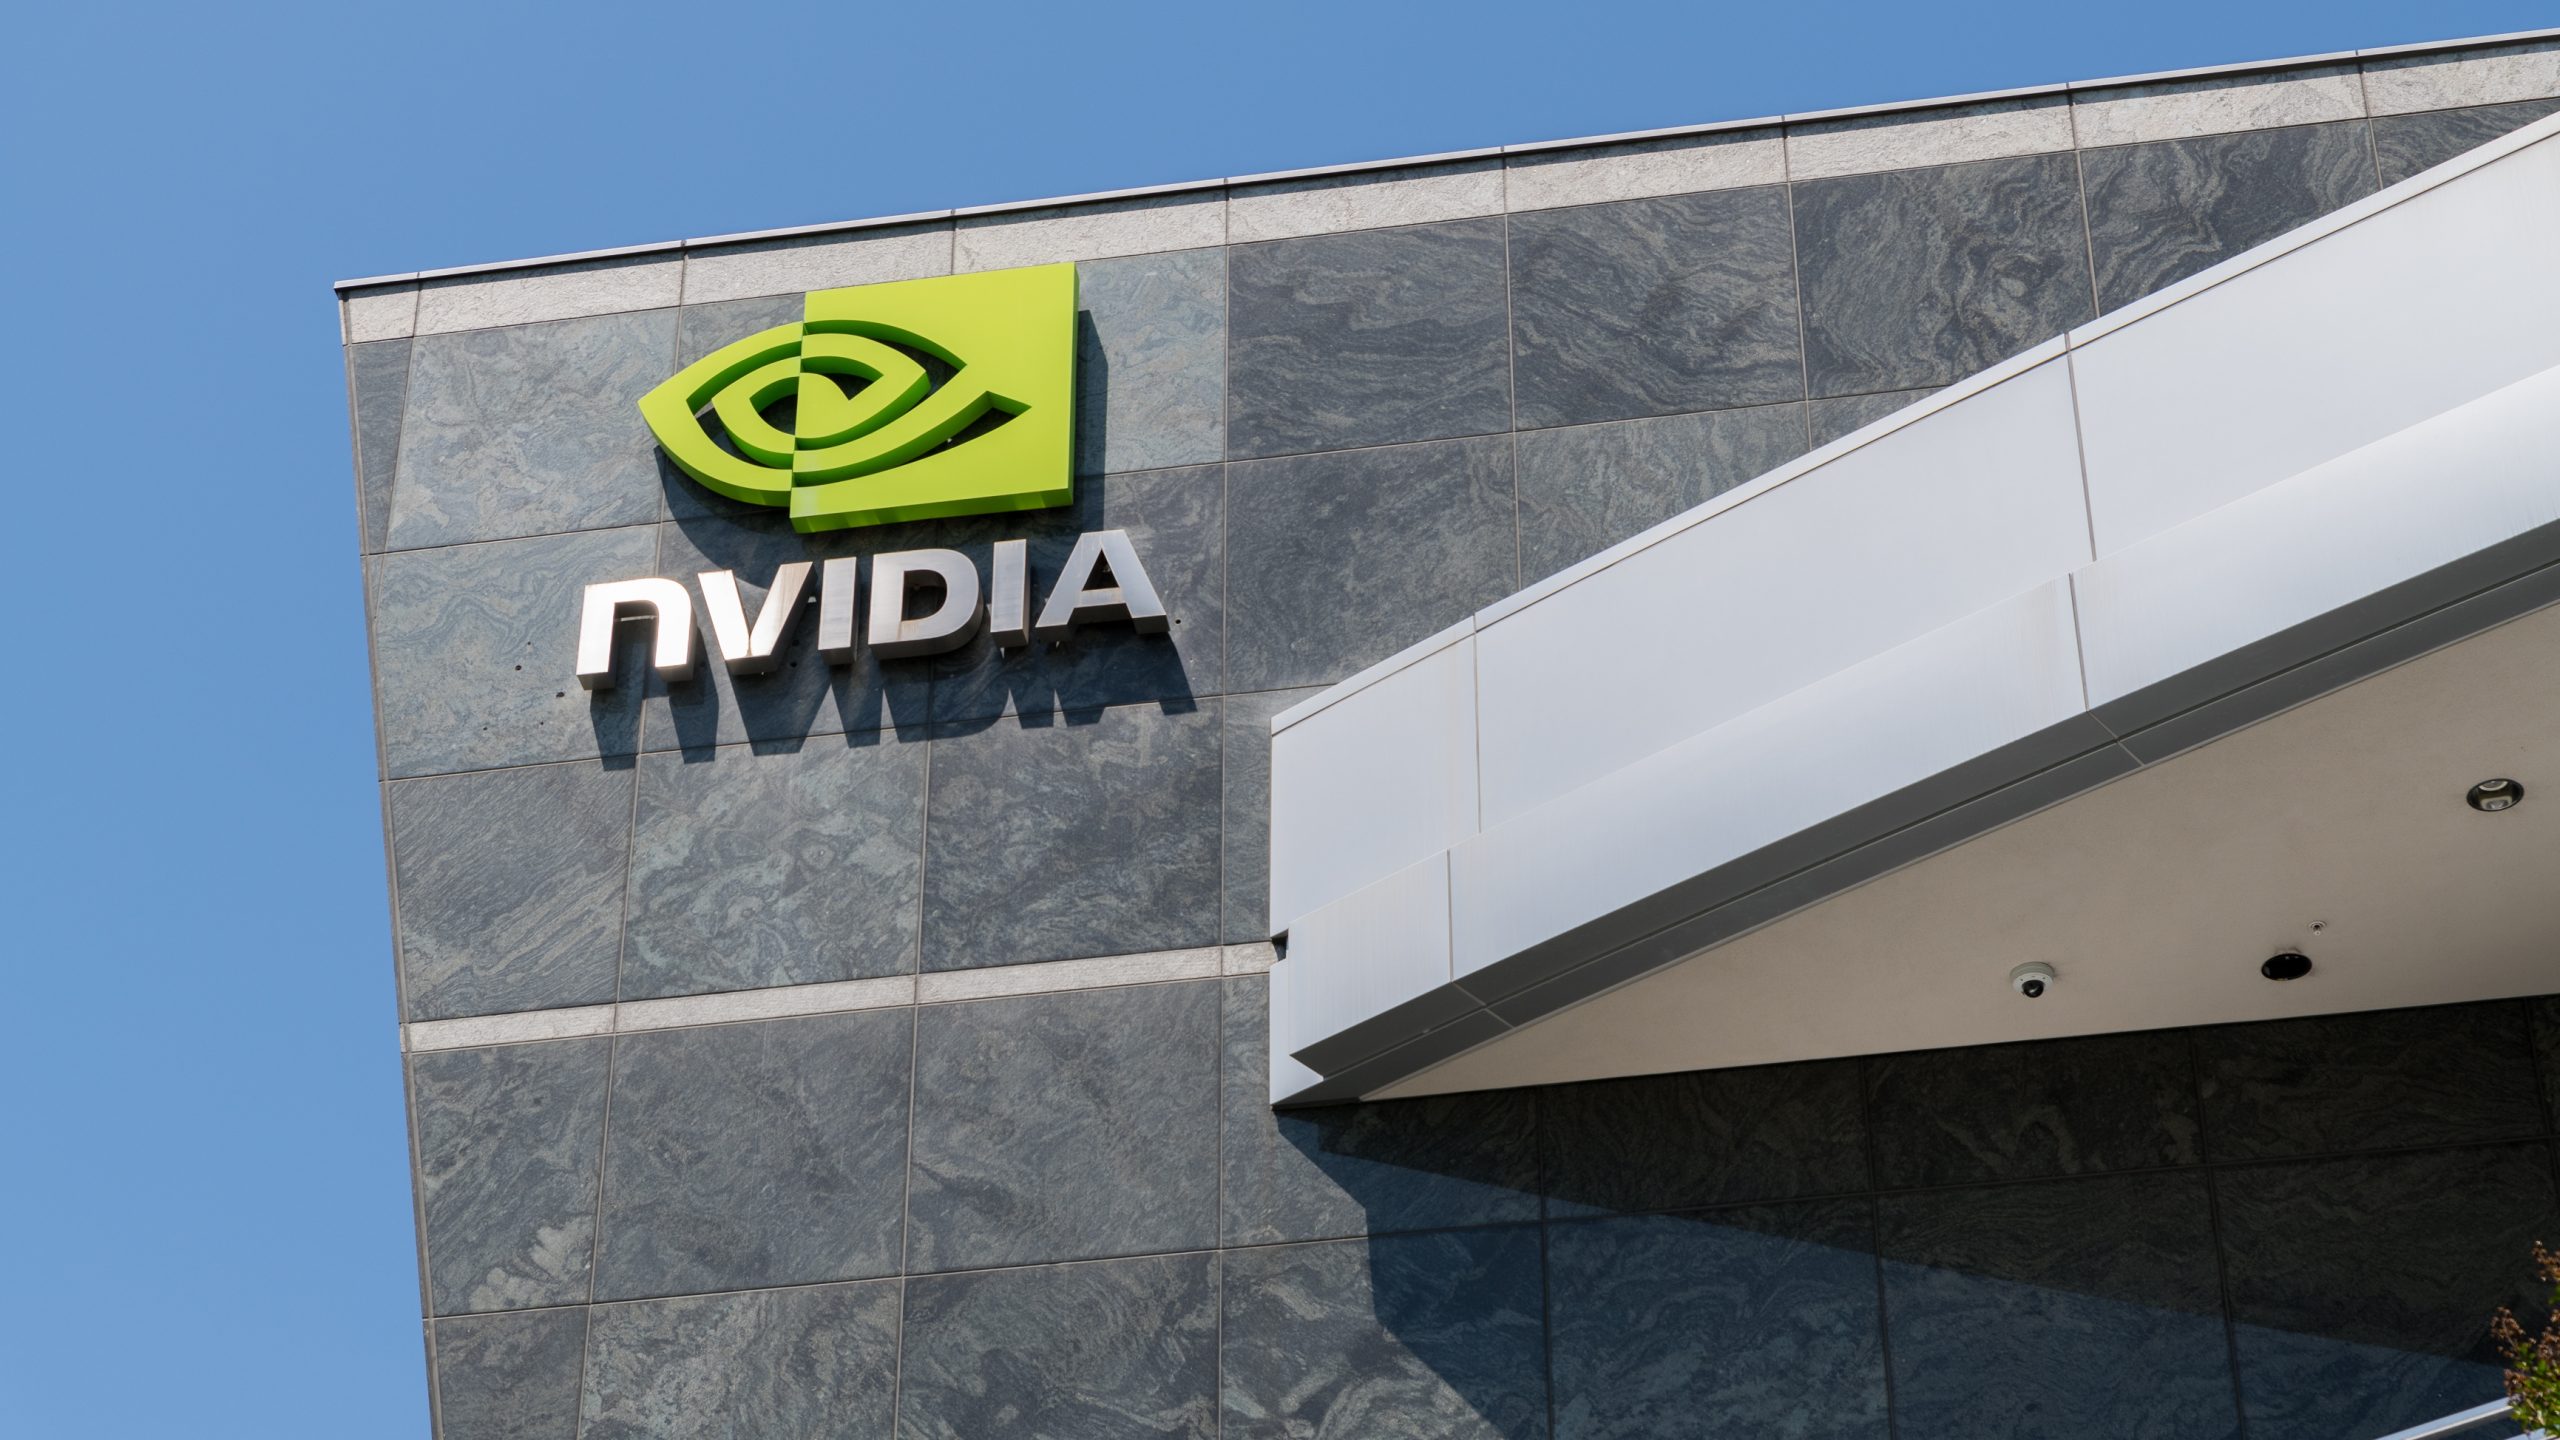 Nvidia Geforce-ийн шинэ драйверууд Elden Ring болон Rtx 3080 Ti зөөврийн компьютеруудад зам тавьжээ.